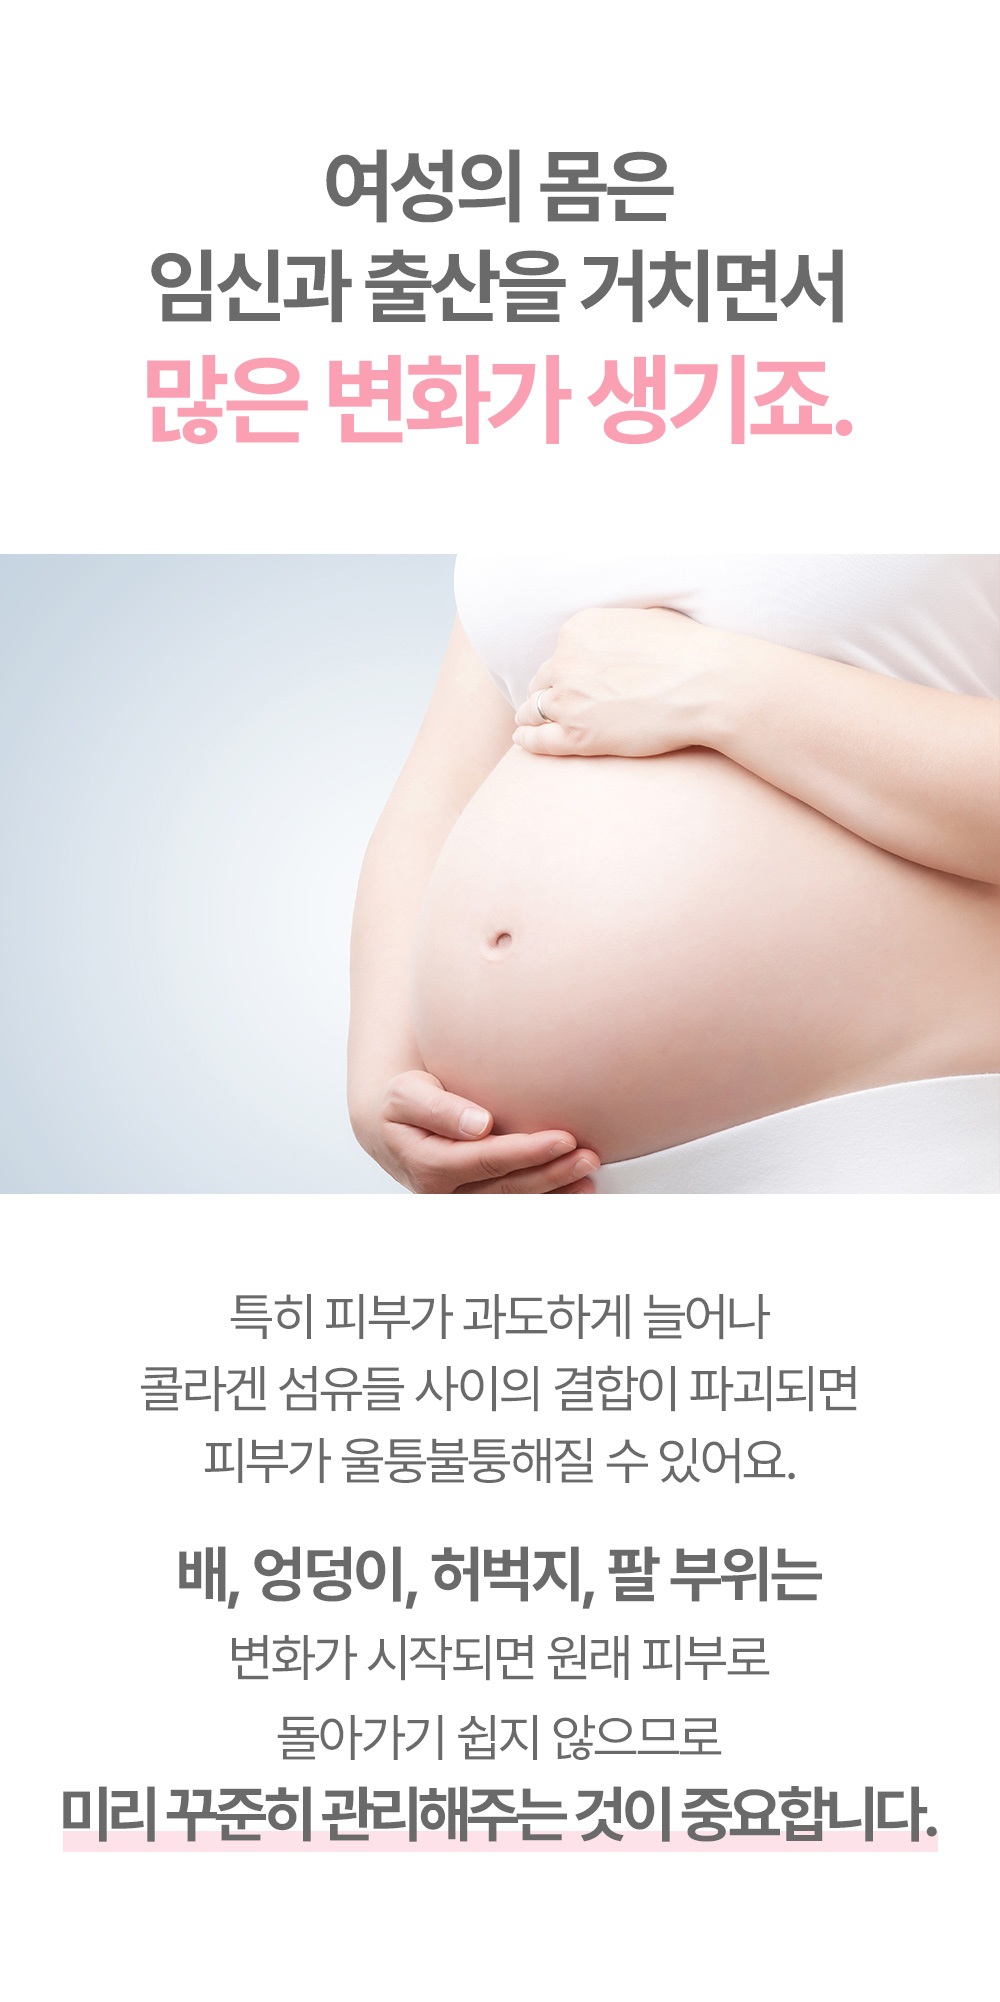 여성의 몸은 임신과 출산을 거치면서 많은 변화가 생기죠